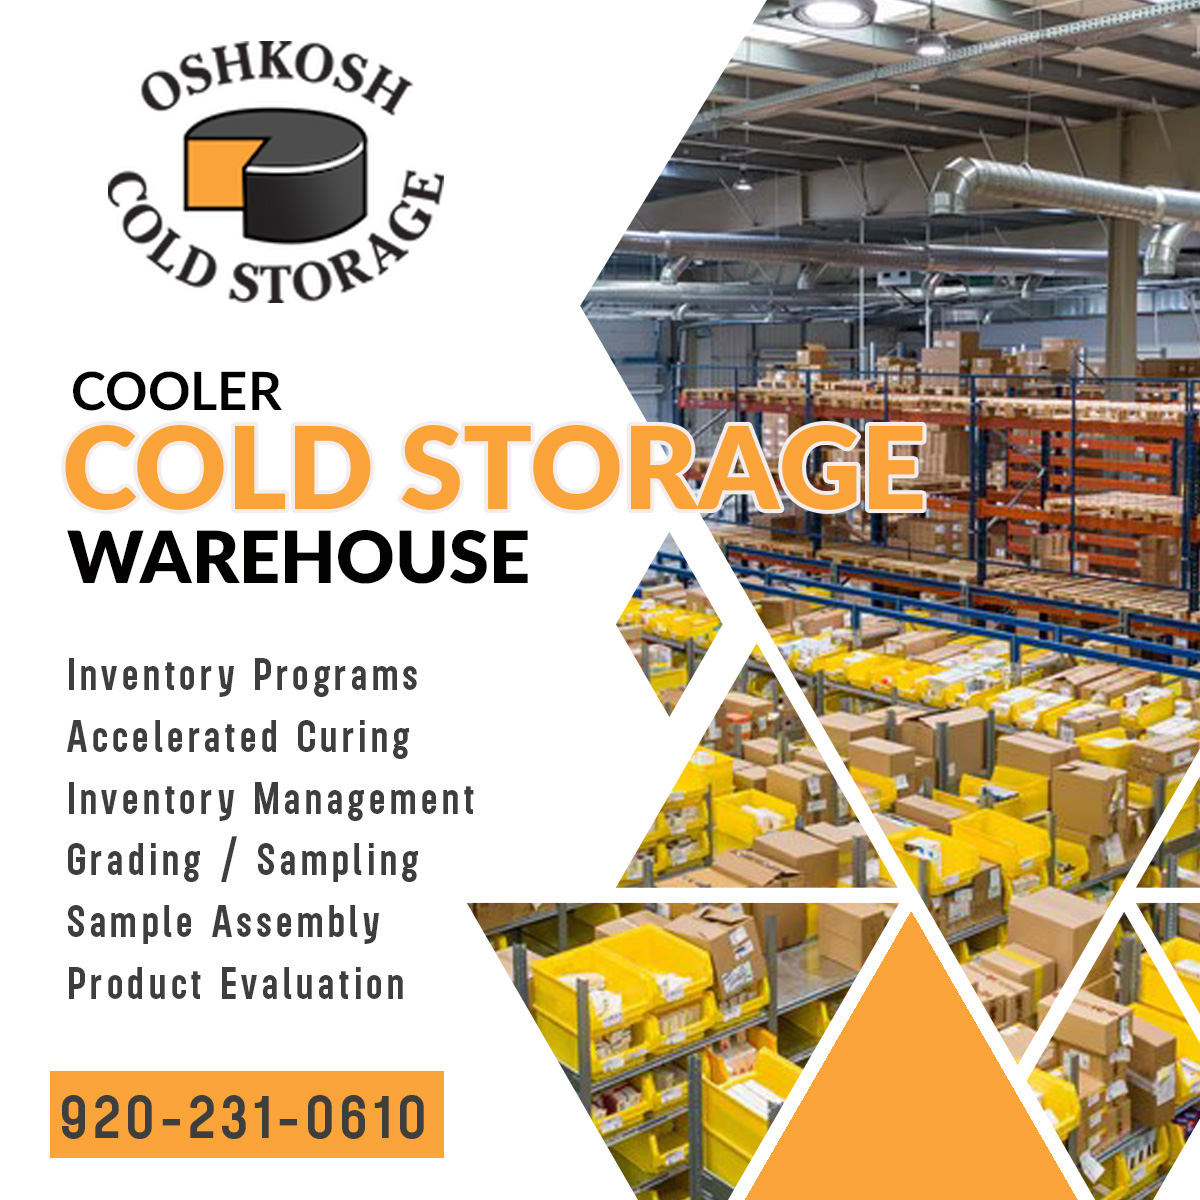 Oshkosh Cold Storage